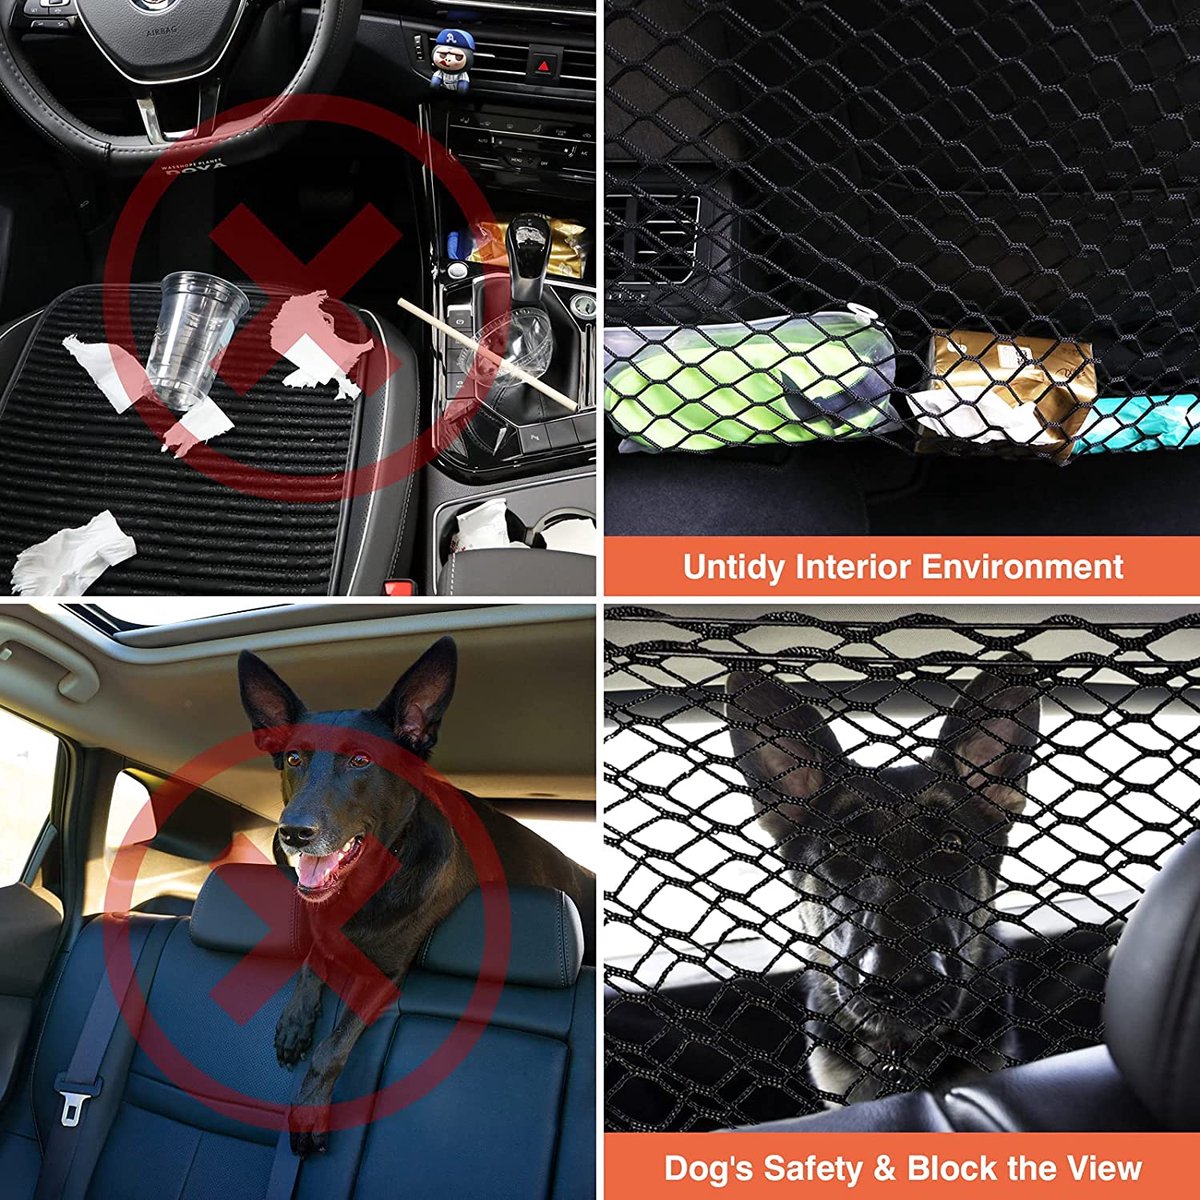 DELITLS Barrière de voiture réglable pour chien - Isolation de voiture -  Filet de coffre pour protection des animaux de compagnie - Universel pour